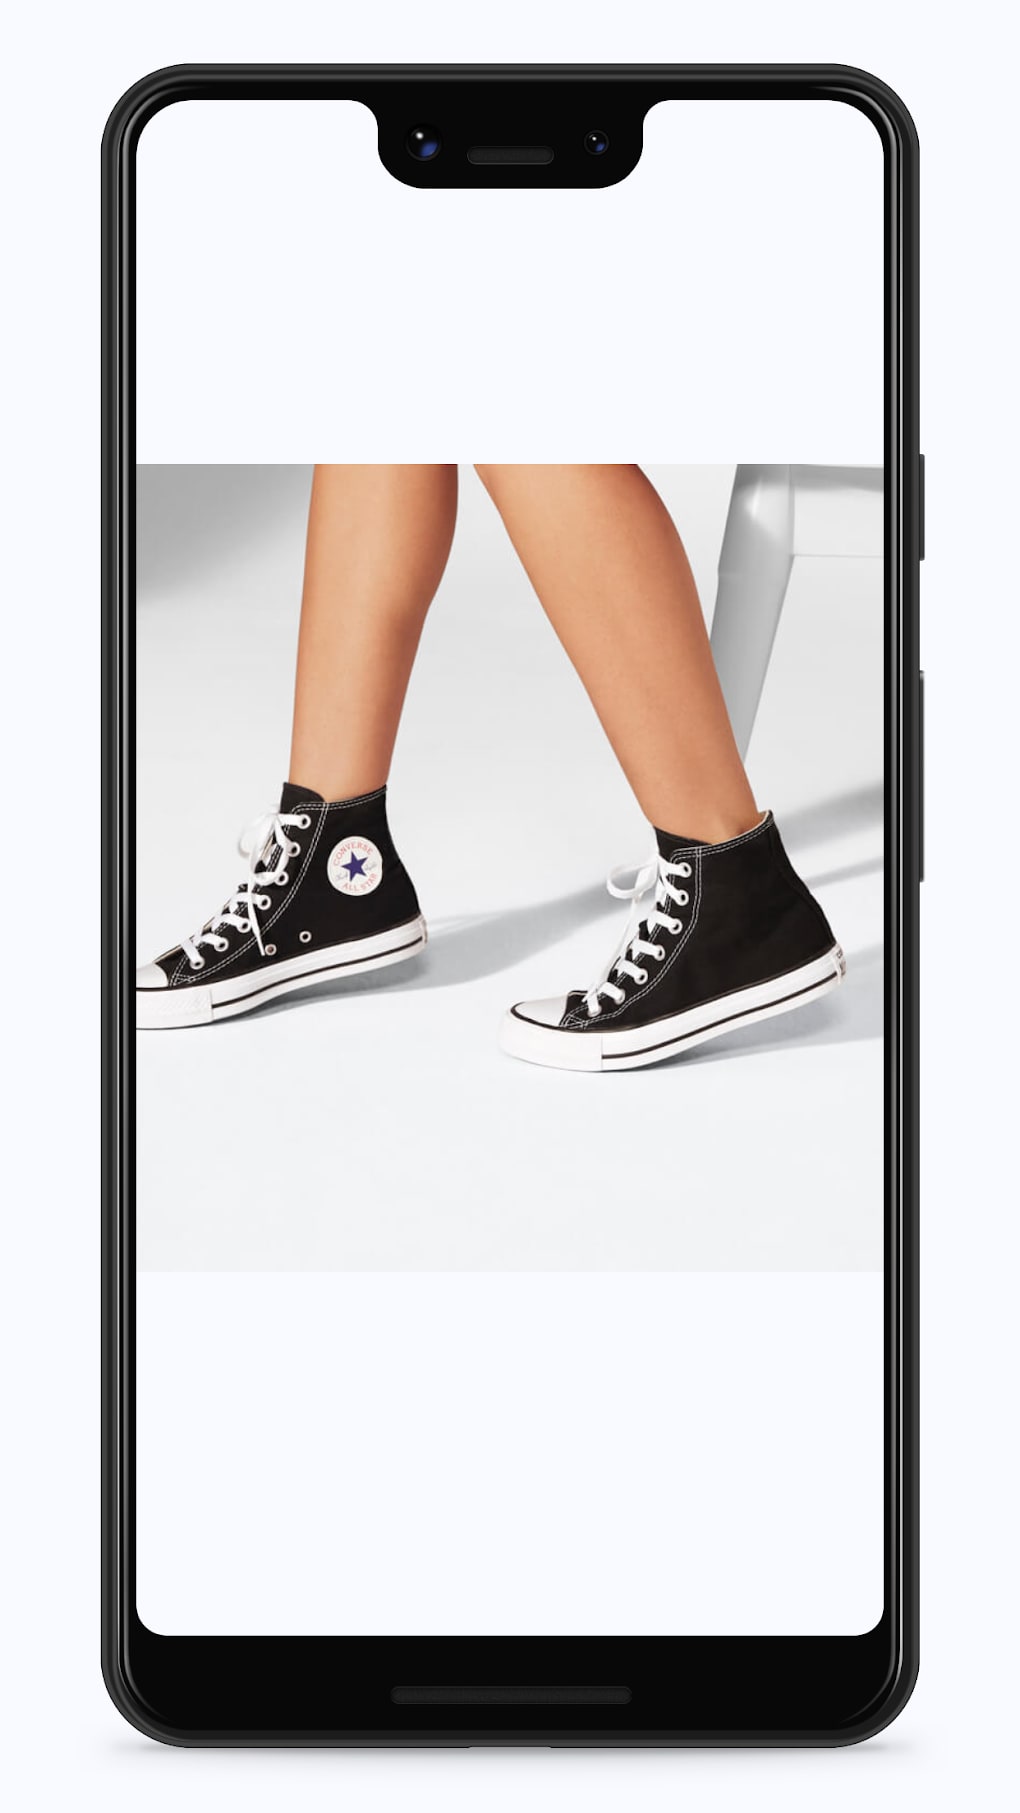 conjunctie Openbaren Koel Converse Shoes App for Android - Download